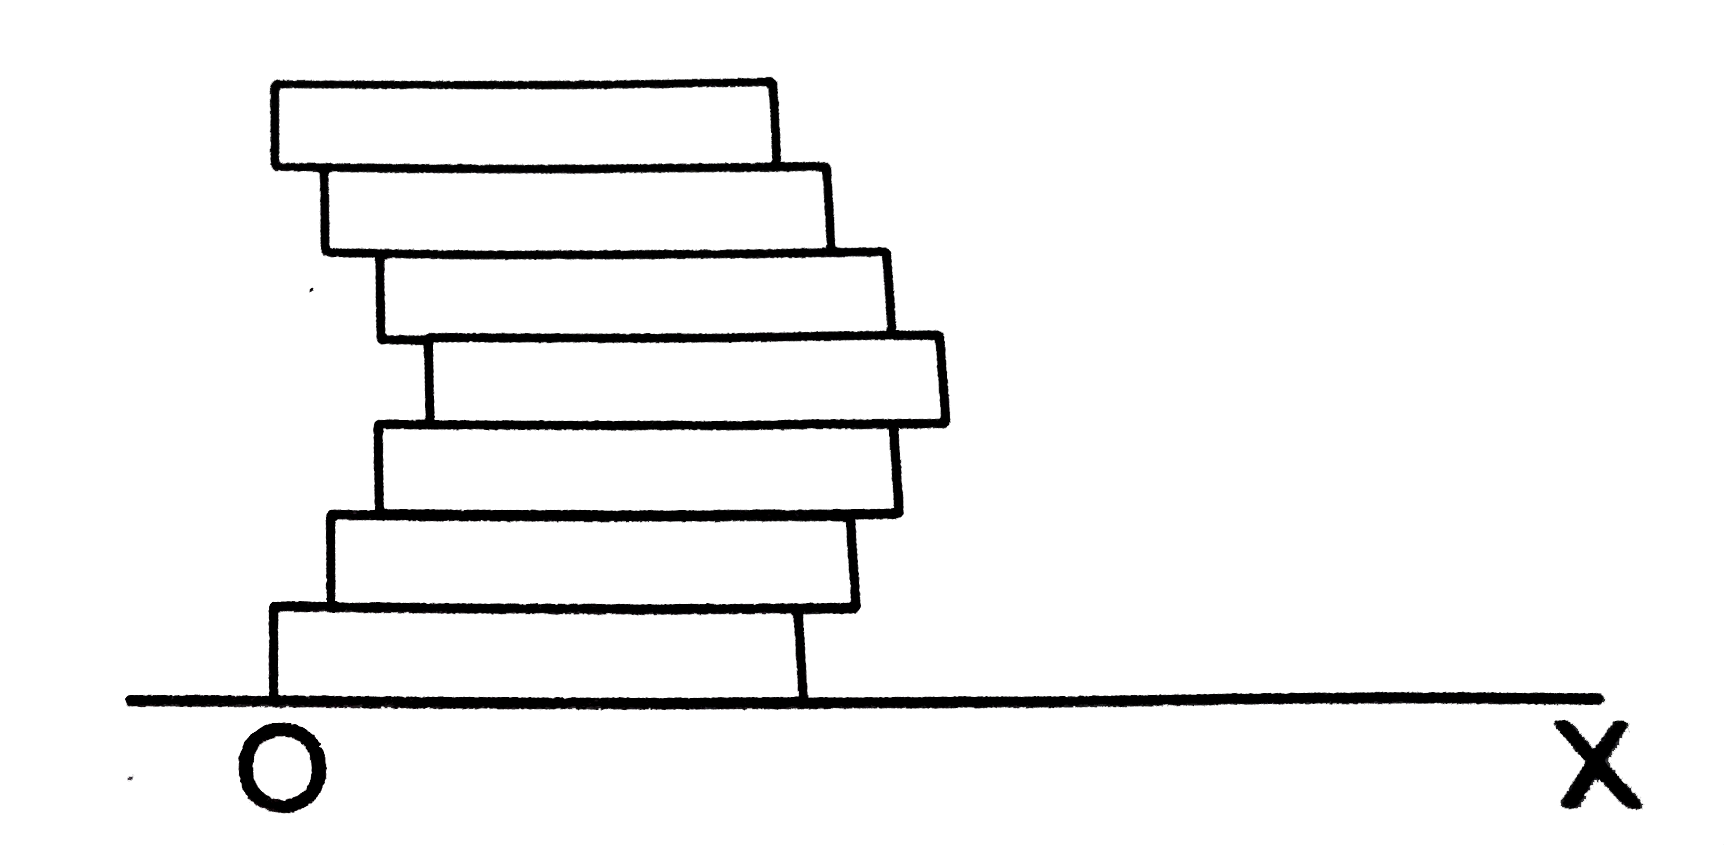 सात समांगी (homogeneous) ईटे, जिनमें से प्रत्येक की लम्बाई L है , चित्र में दिखाए अनुसार सजाकर रखी गई है | प्रत्येक ईट अपने नीचे की ईट से L/10  दूरी खिसककर रखे गई है | चित्र में दिखाए गए मूलबिंदु O के अनुसार इस संहति के द्रव्यमान केंद्र का x-निर्देशांक बताएँ |